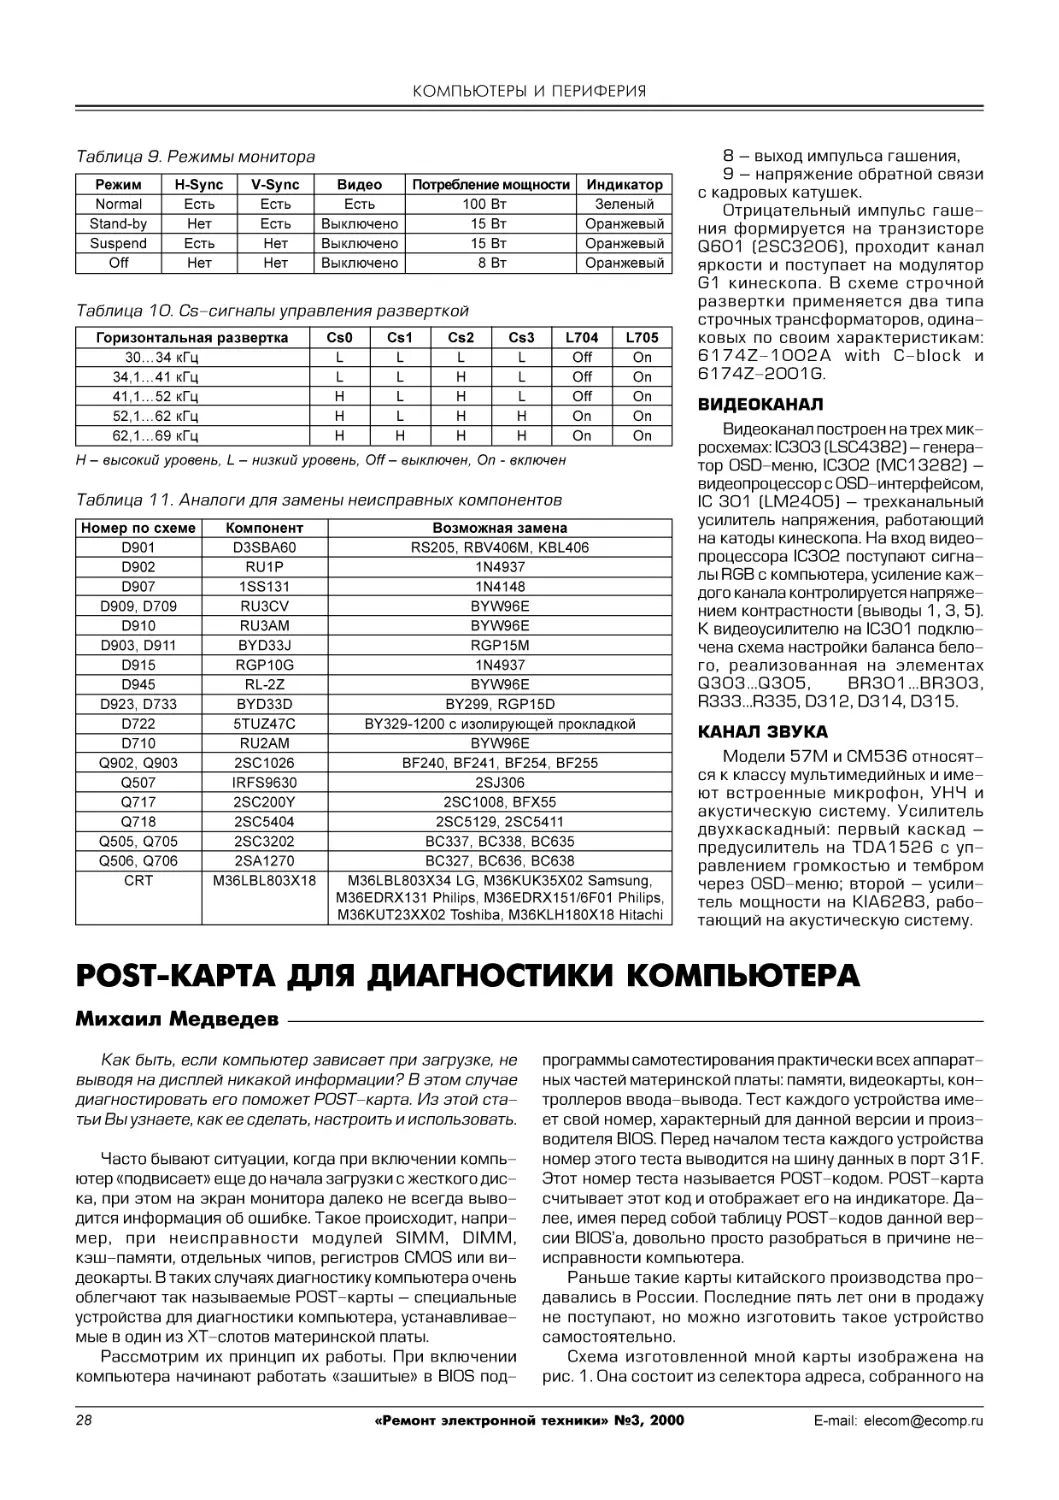 М.Медведев. Post-карта для диагностики компьютера